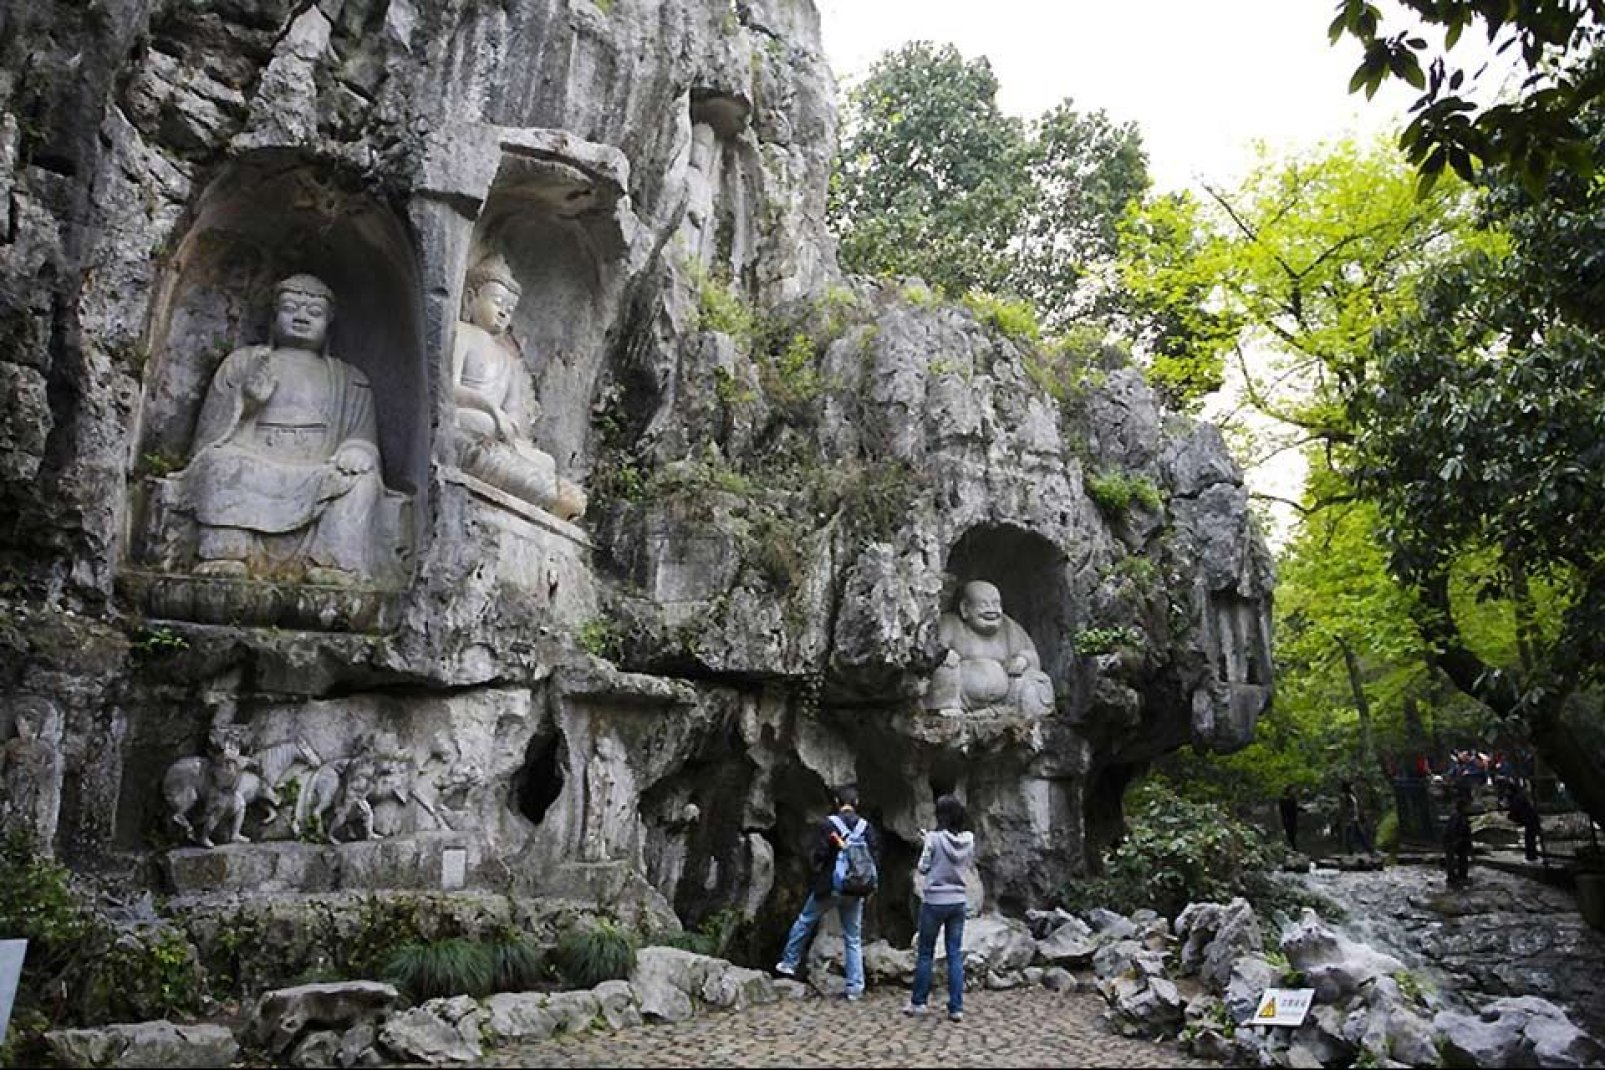 Sur la colline au dessus du temple de Lingyin, à Hangzhou, se trouvent environ 388 statues de Bouddha Bodhisattva taillées dans la pierre entre le Xème et le XIVème siècle.